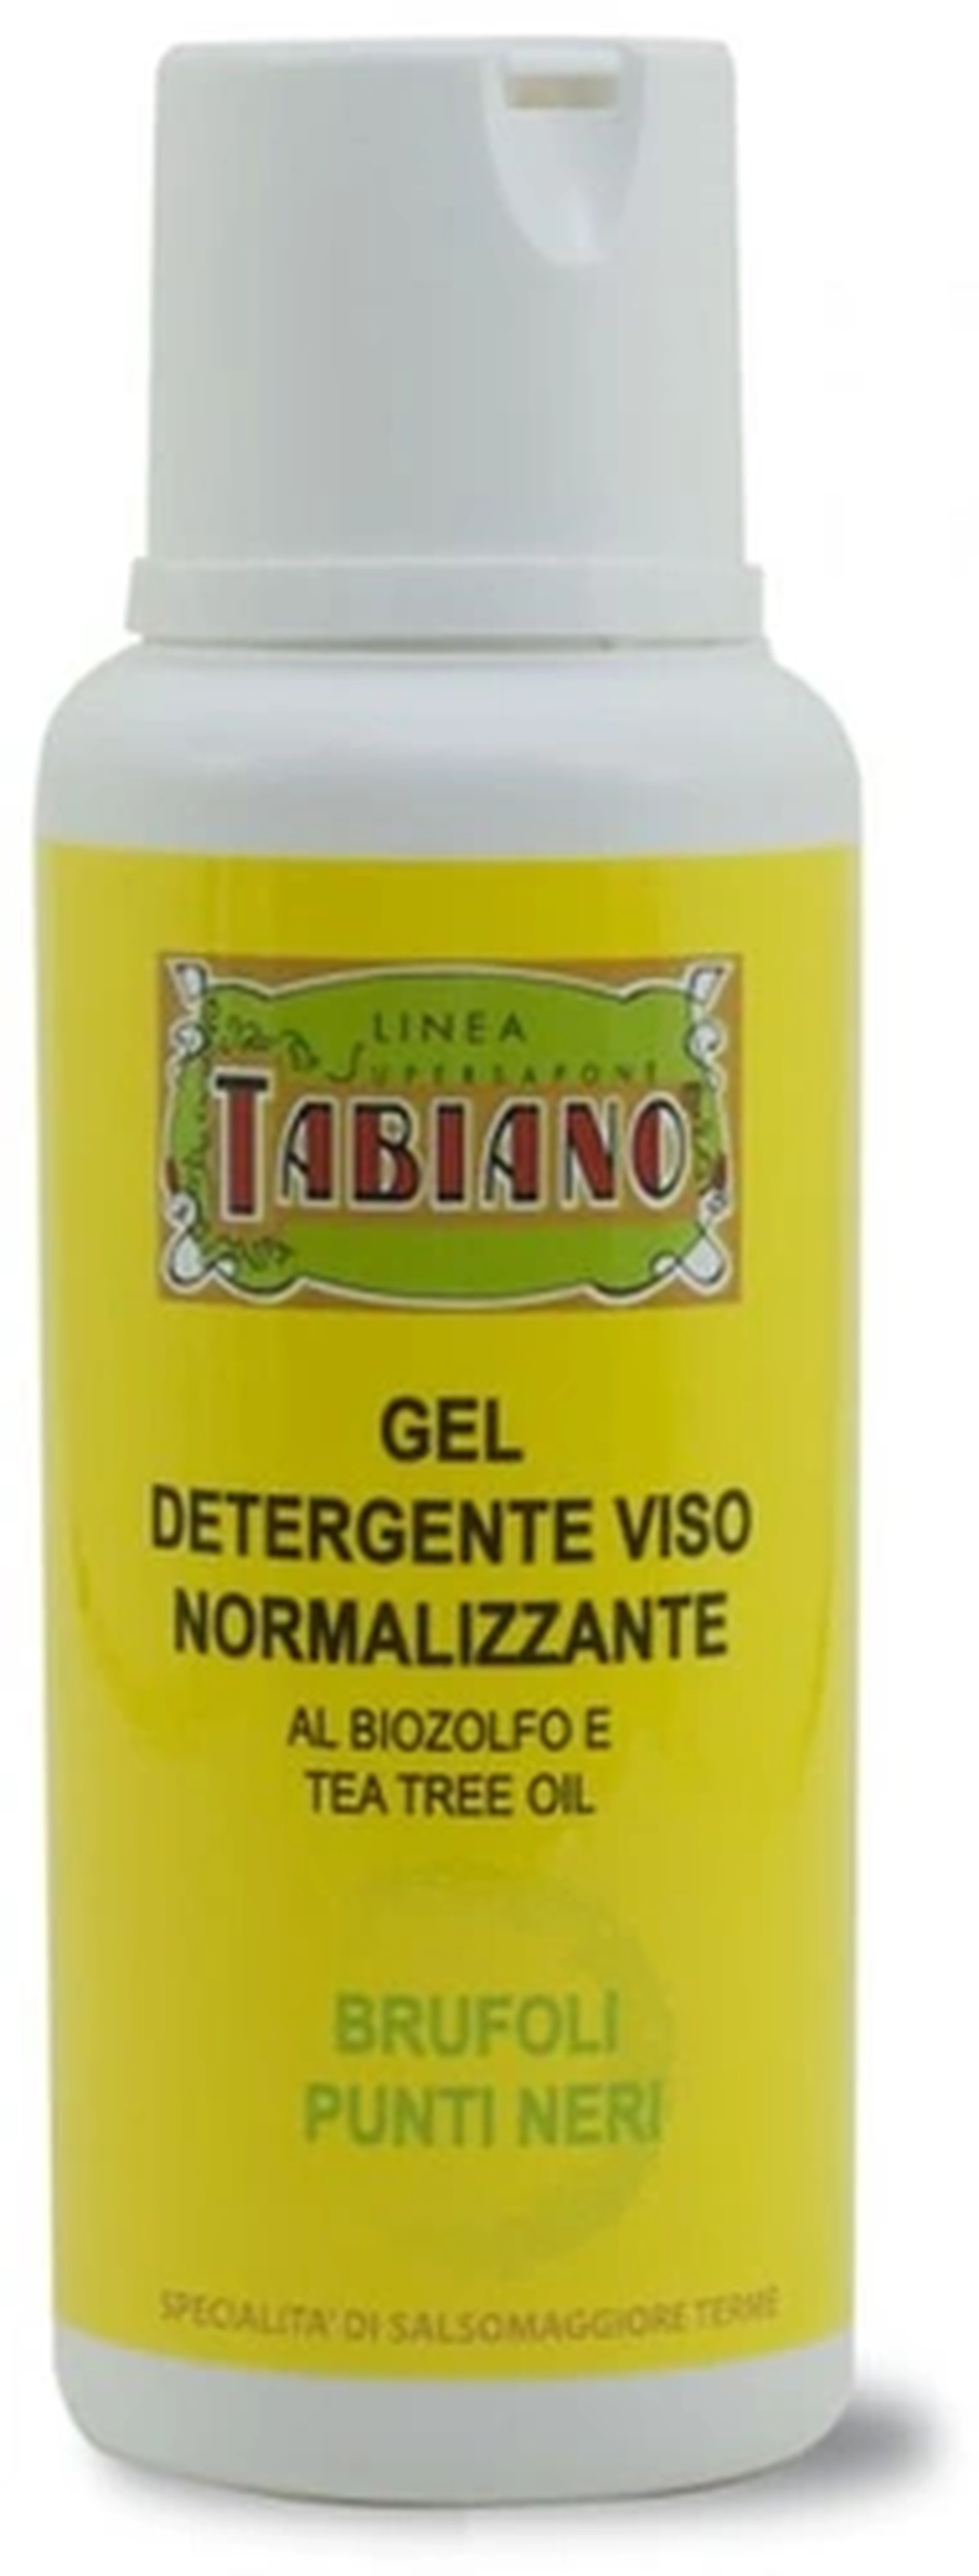 Purifica la tua pelle con il gel detergente viso delicato al Biozolfo e Tea Tree Oil